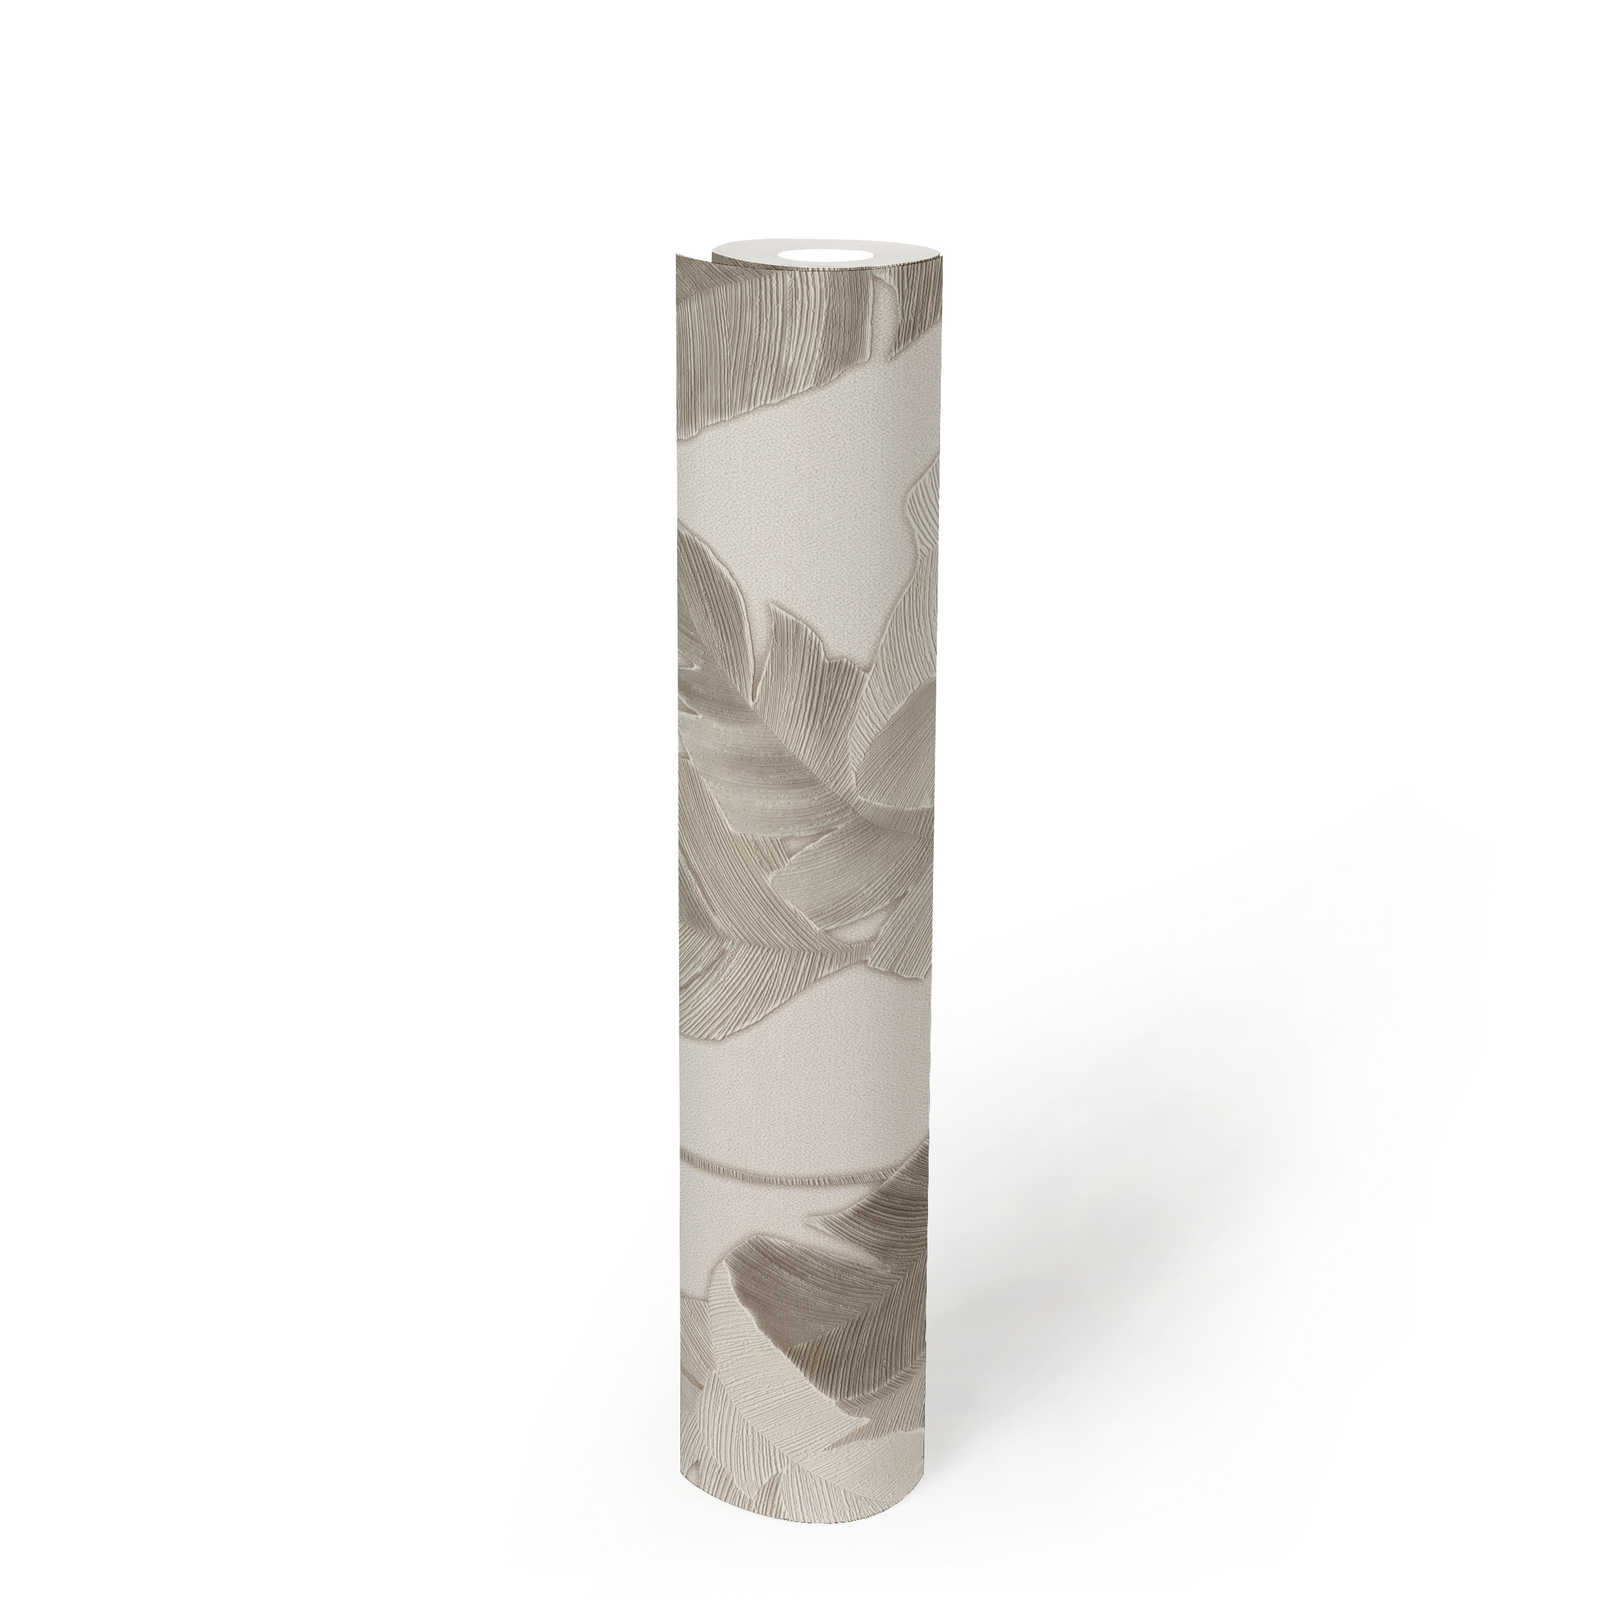             Papier peint intissé avec feuilles de palmier discrètes - blanc, beige, gris
        